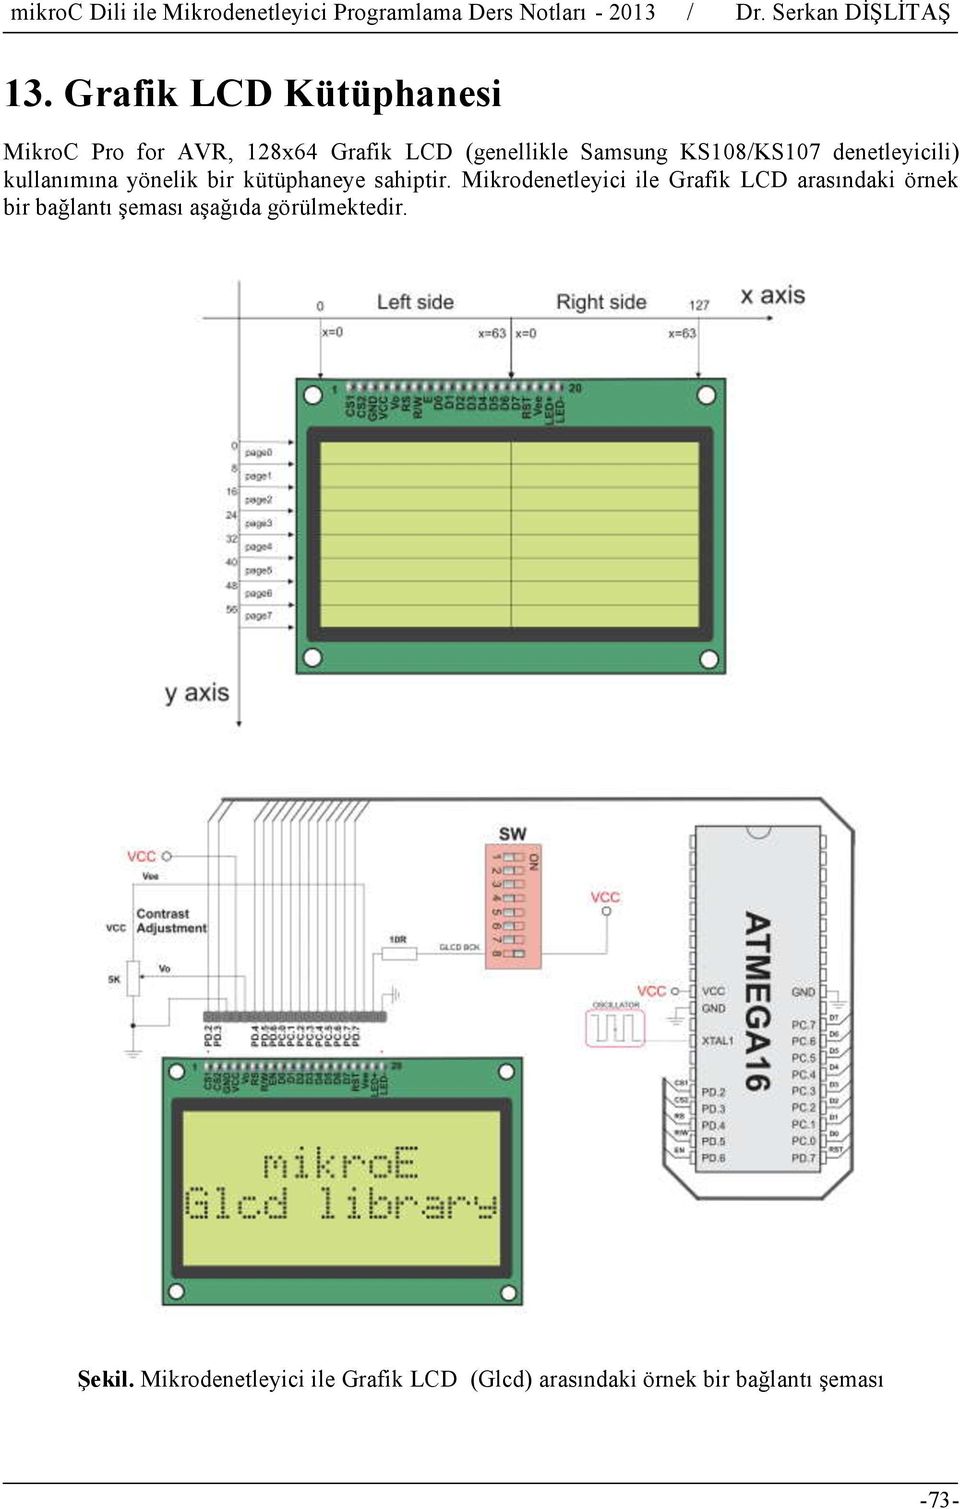 Mikrodenetleyici ile Grafik LCD arasındaki örnek bir bağlantı şeması aşağıda